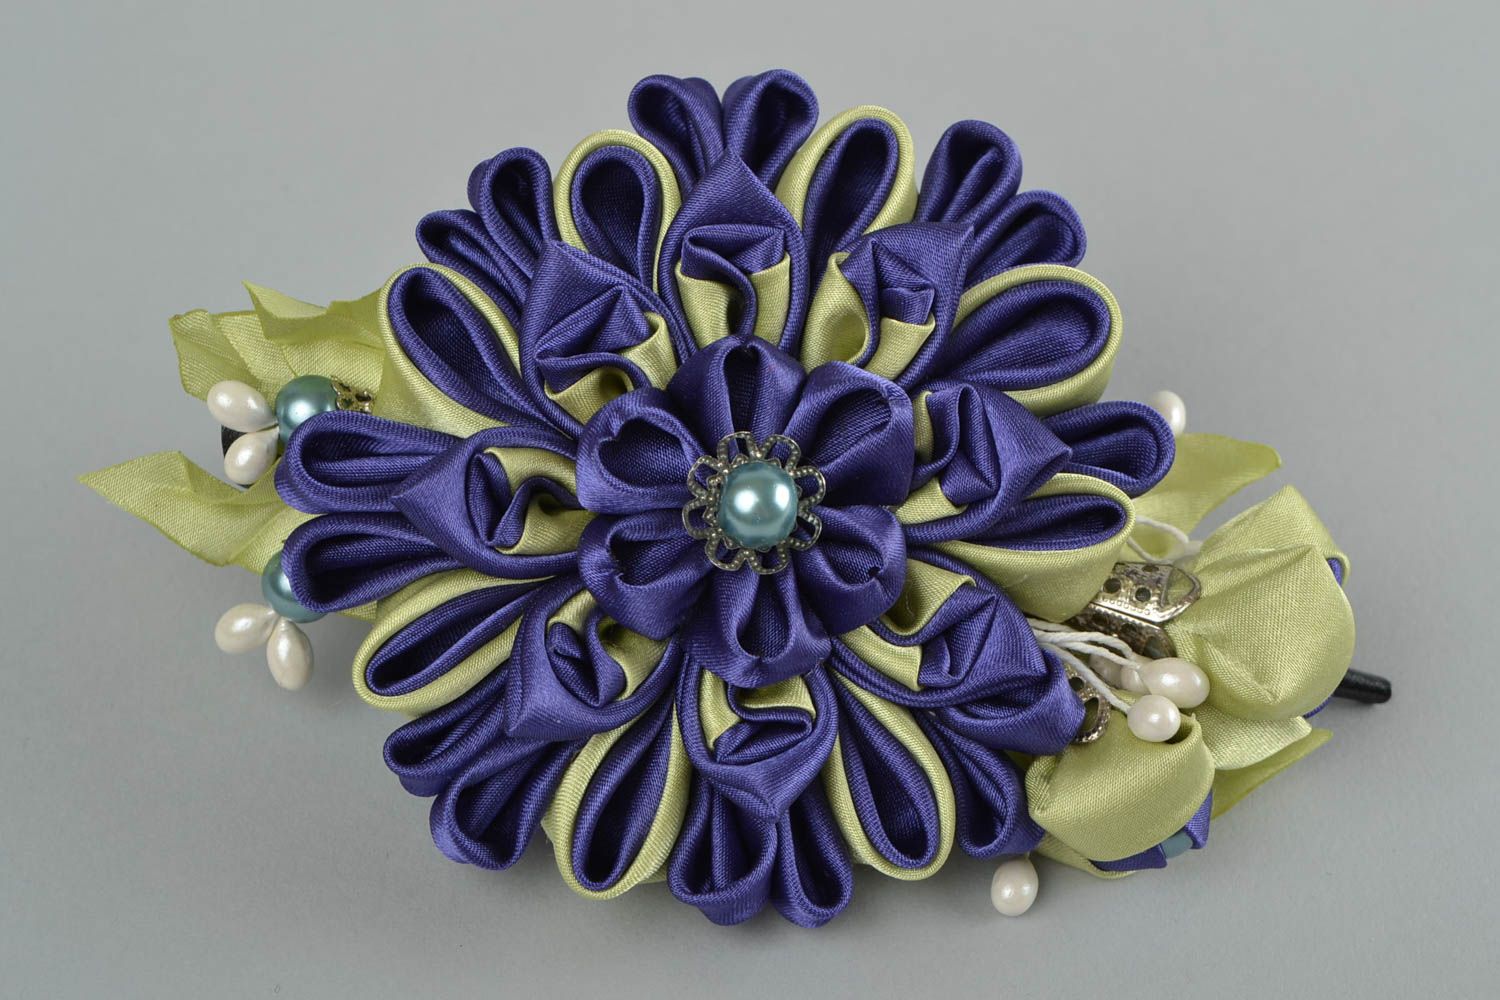 Textil Haarspange mit Blumen aus Atlasbändern handmade blau Schmuck für Frauen foto 2